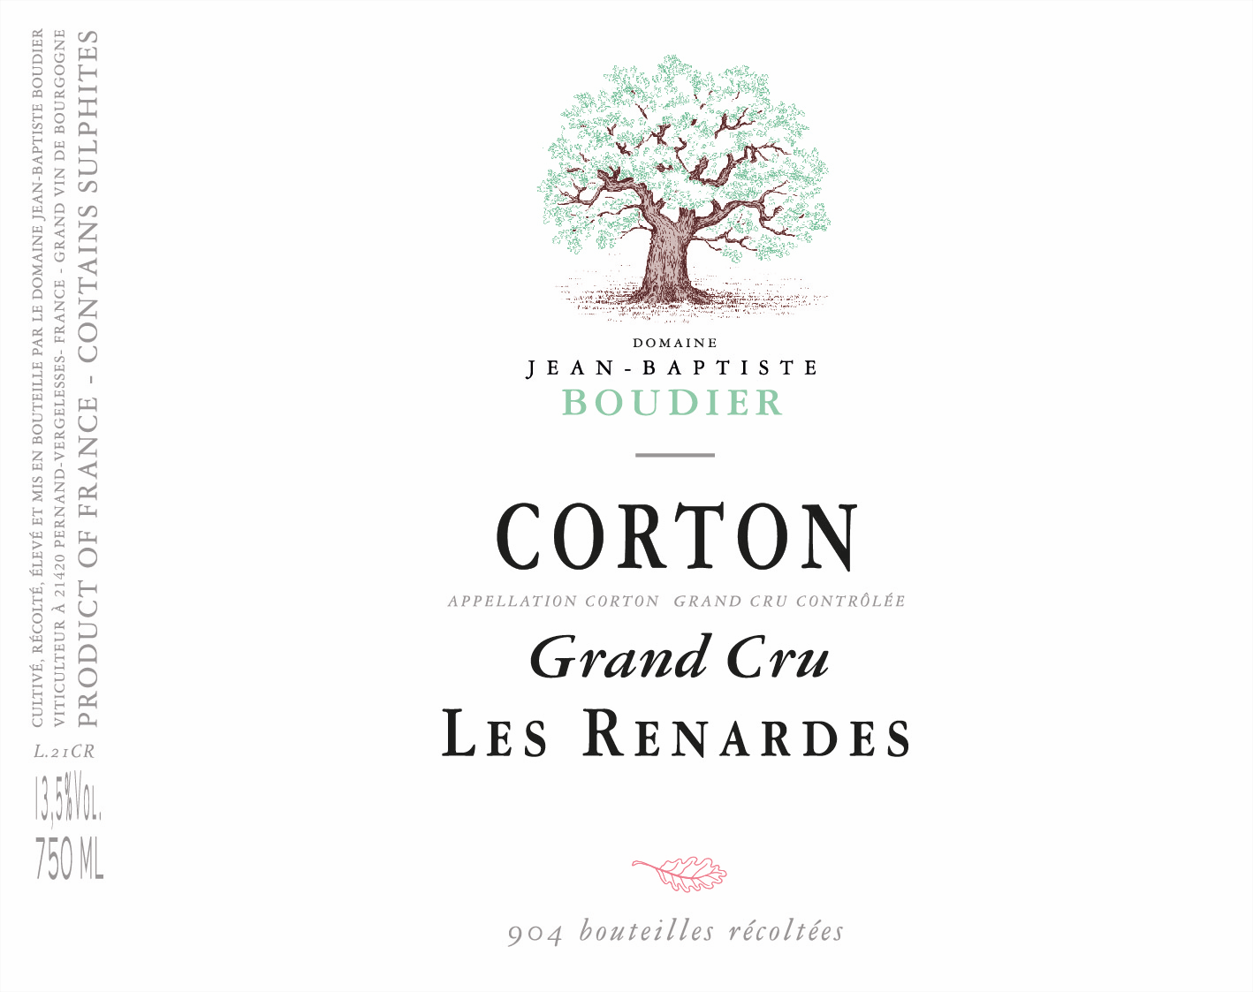 Corton Grand Cru 'Les Renardes', Domaine Jean-Baptiste Boudier ...